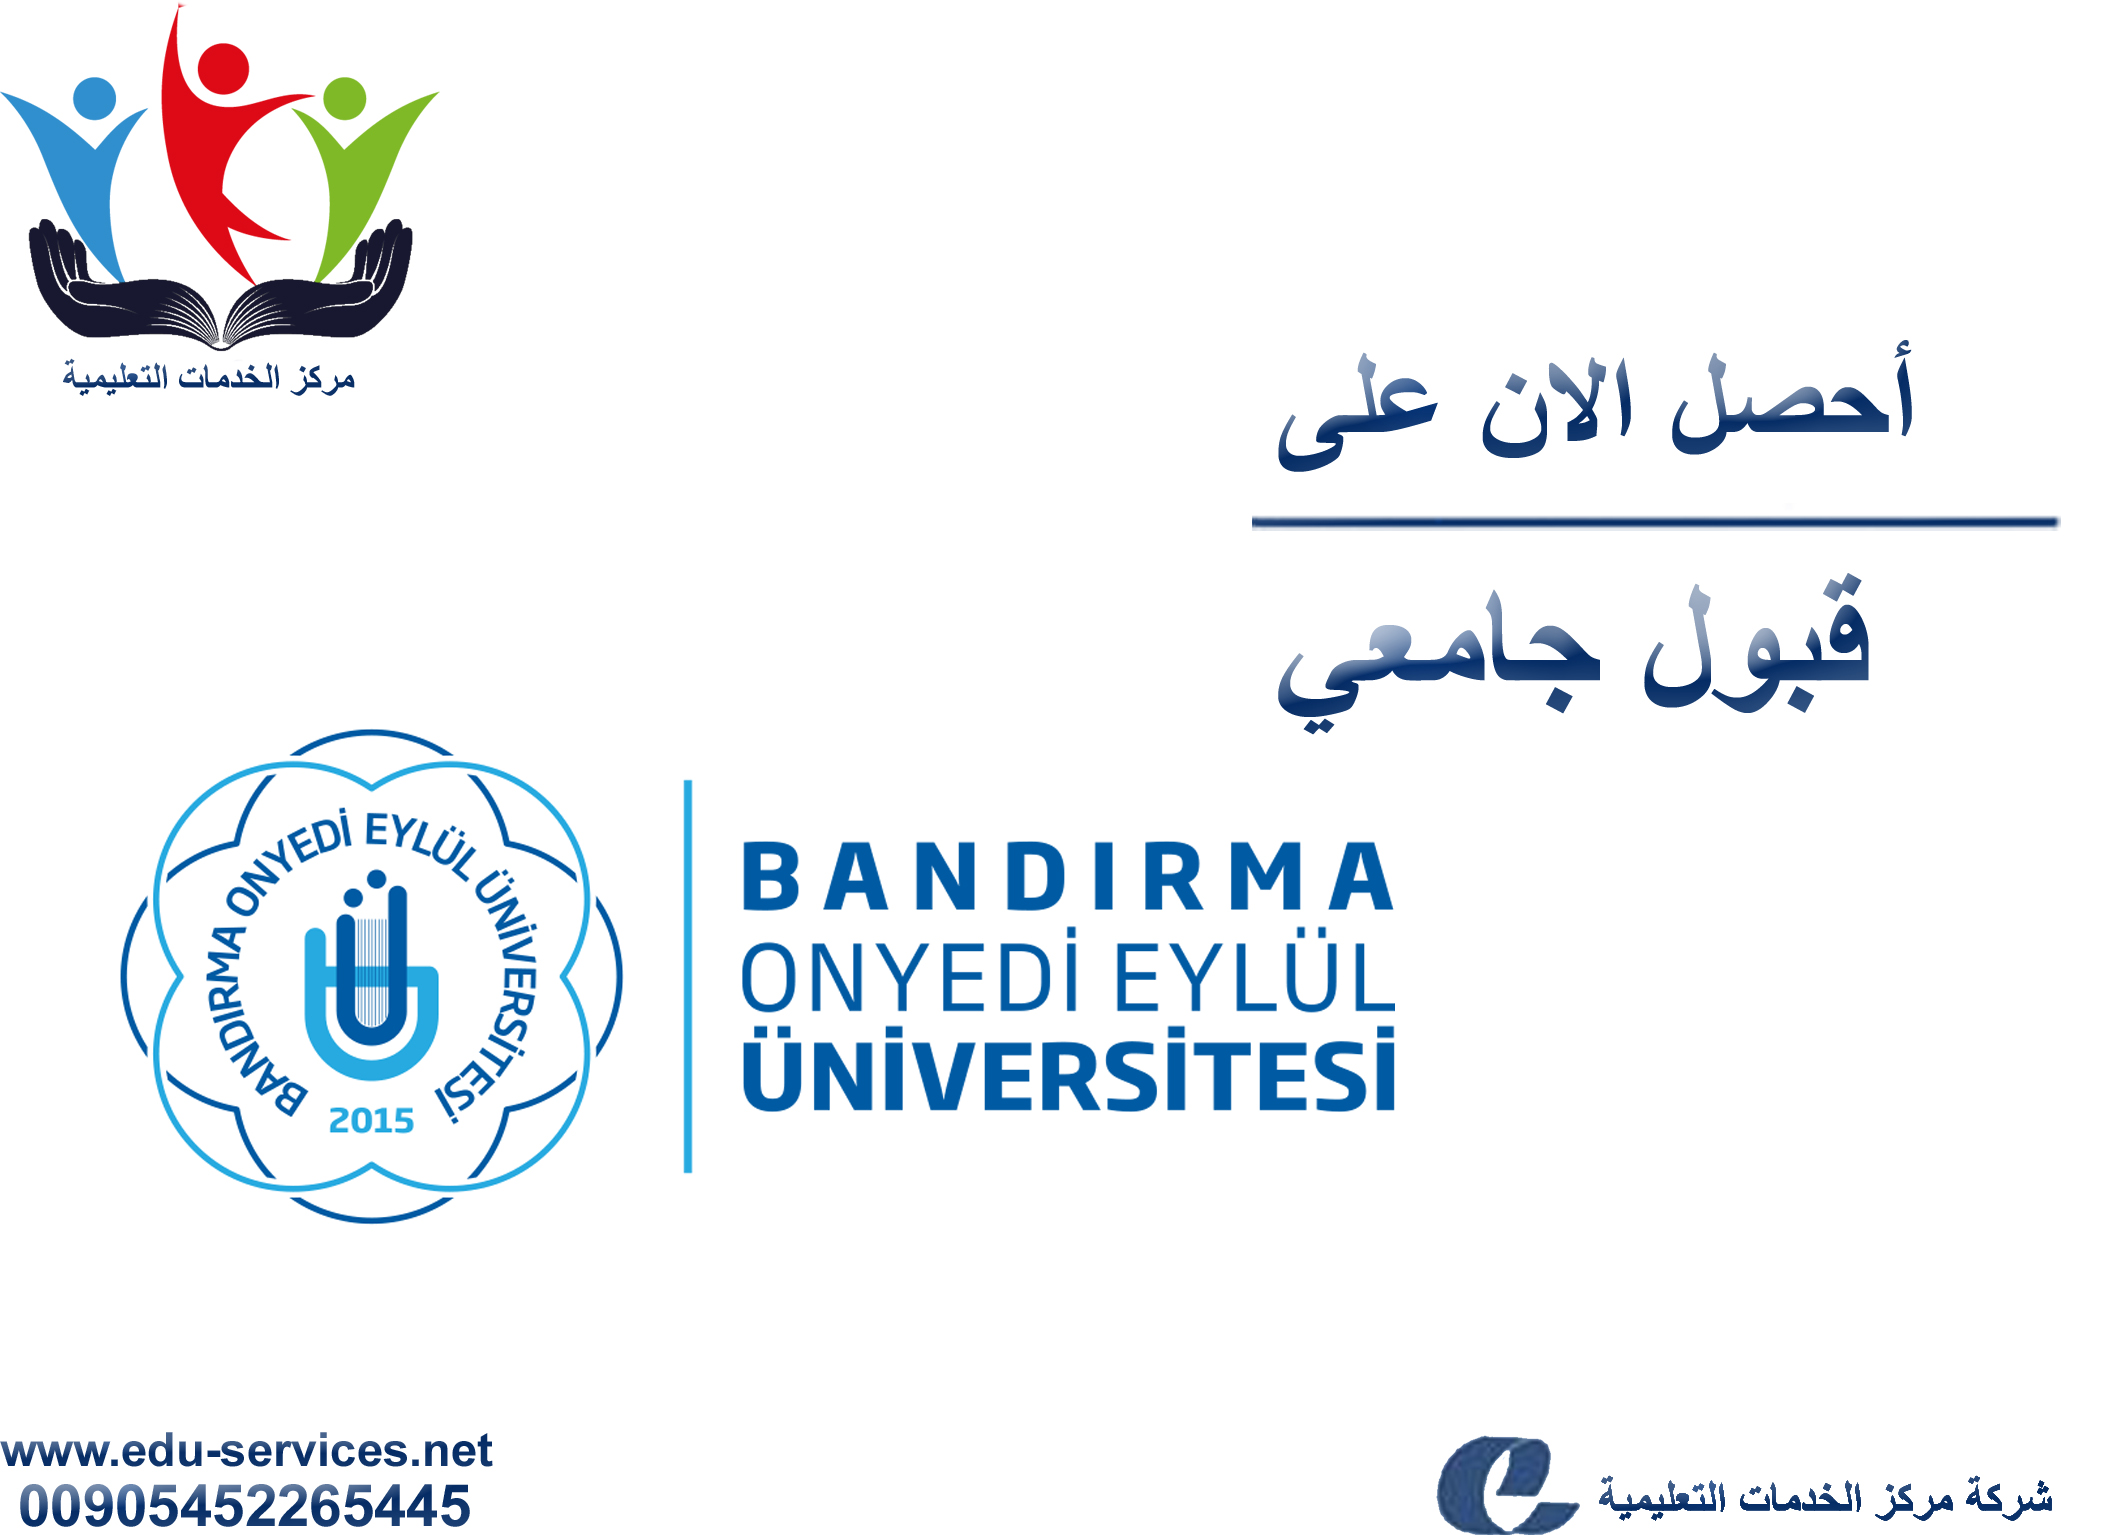 جامعة باندرما 17 أيلولBandırma Onyedi Eylül Üniversity